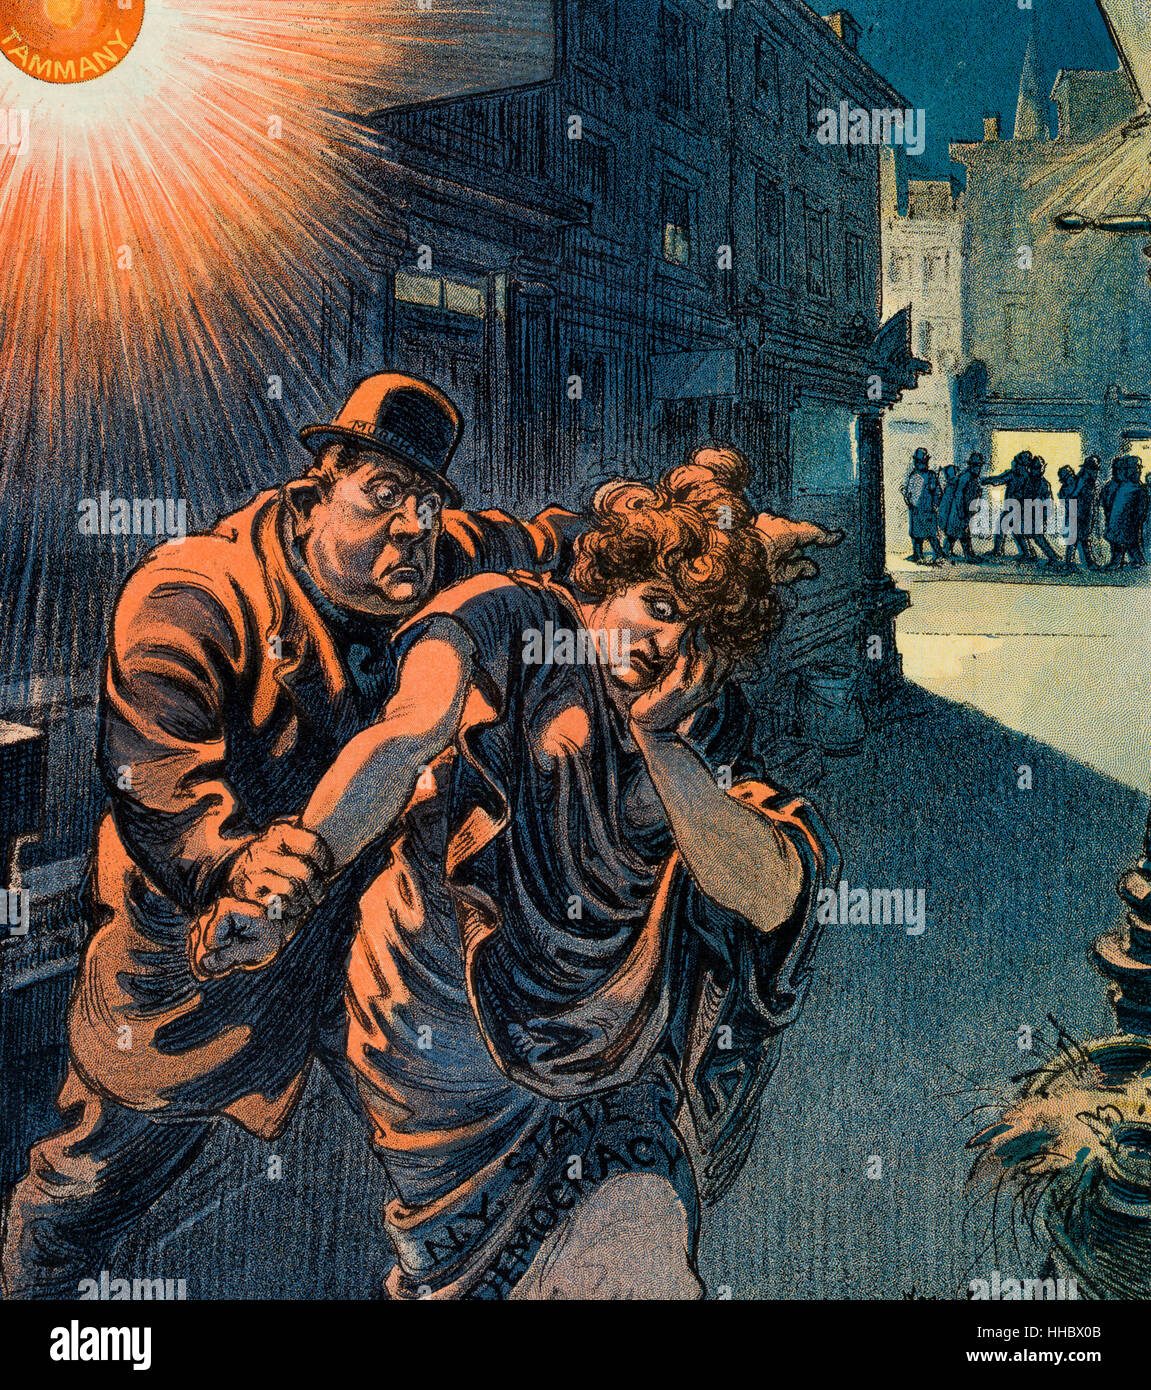 L'esclave blanc - Caricature politique montre Charles F. Murphy, dans une ruelle dans le quartier rouge, éclairé par un réverbère rouge marqués 'Tammany', forcer une femme marqués 'N.Y. La démocratie d'état' pour sortir de l'allée et sur la rue principale. 1911 Banque D'Images